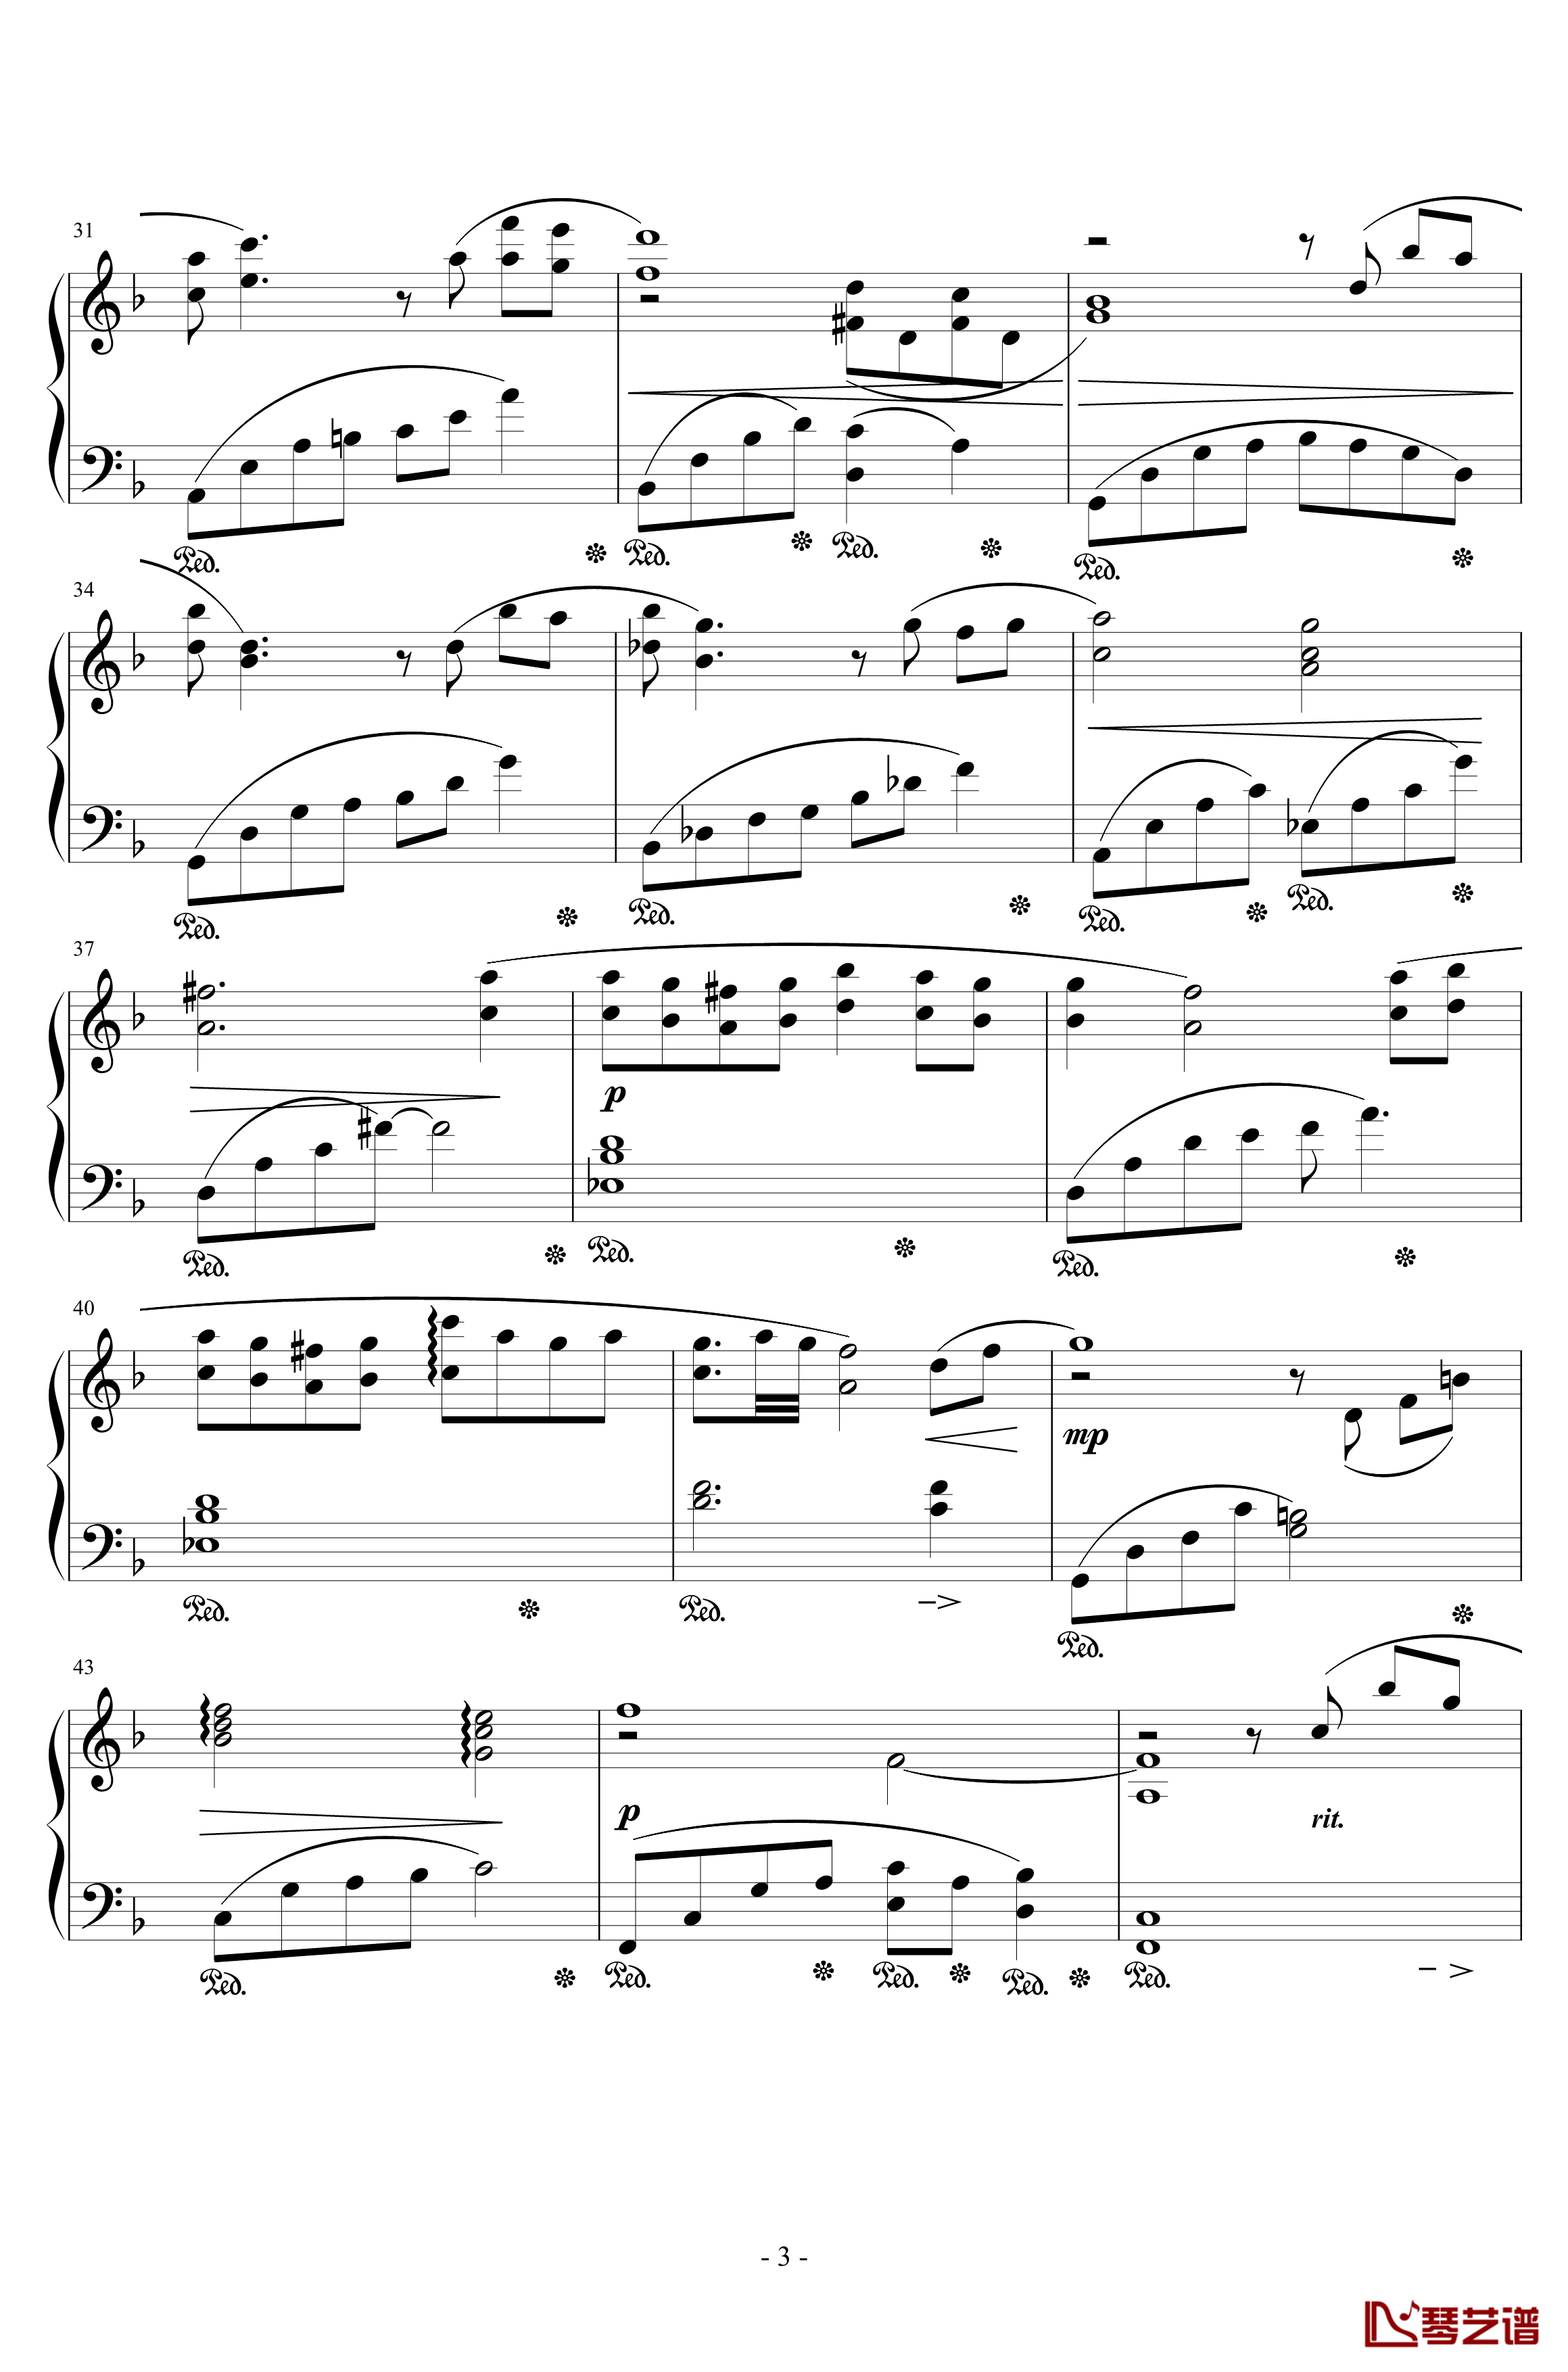 最终幻想7蒂法主题曲钢琴谱-ティファのテーマ-植松伸夫